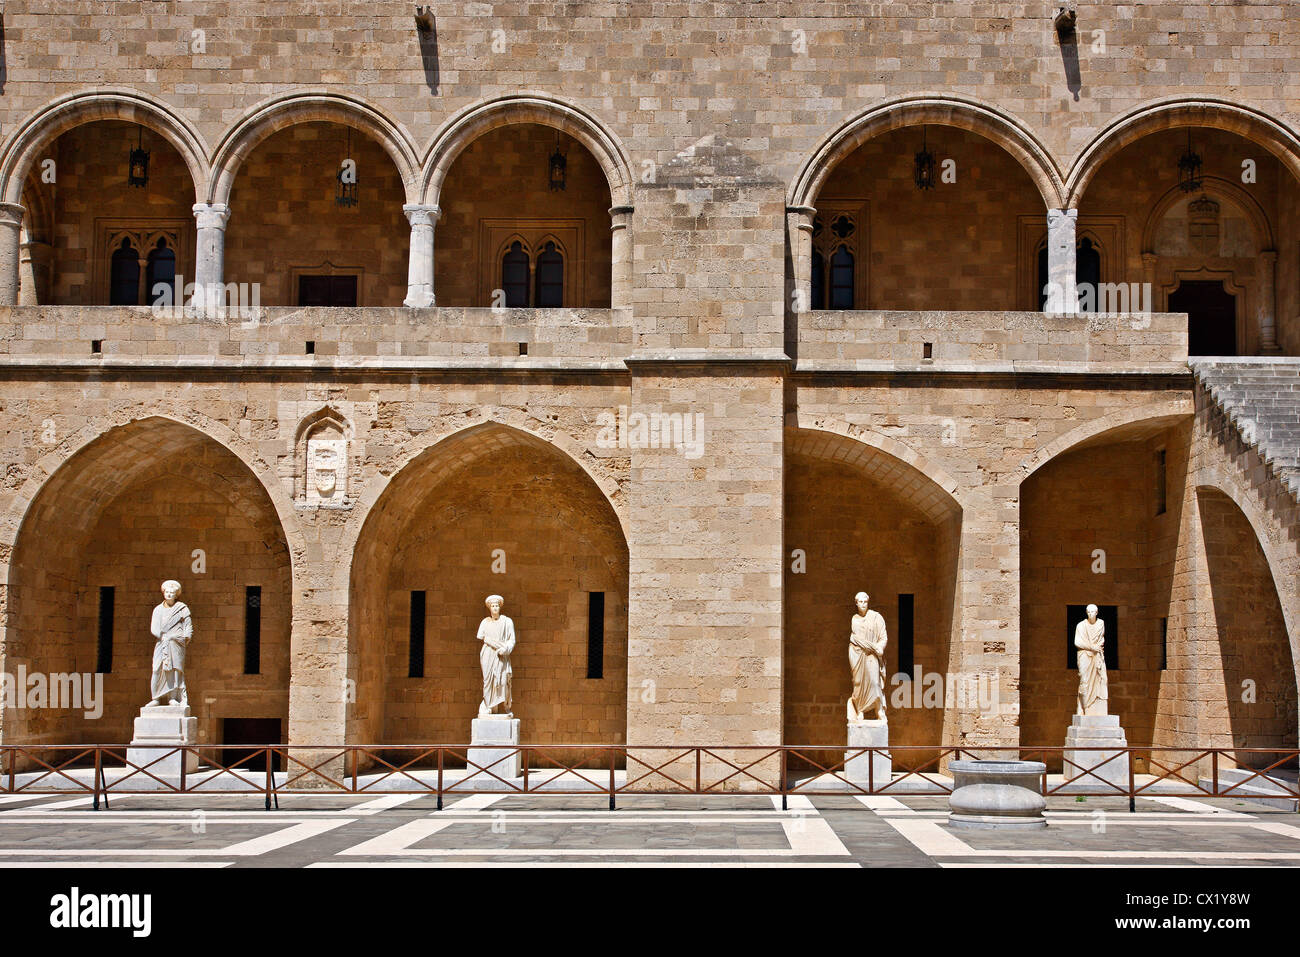 La cour intérieure du palais du Grand Maître, ville médiévale de l'île de Rhodes, Dodécanèse, Grèce. Banque D'Images